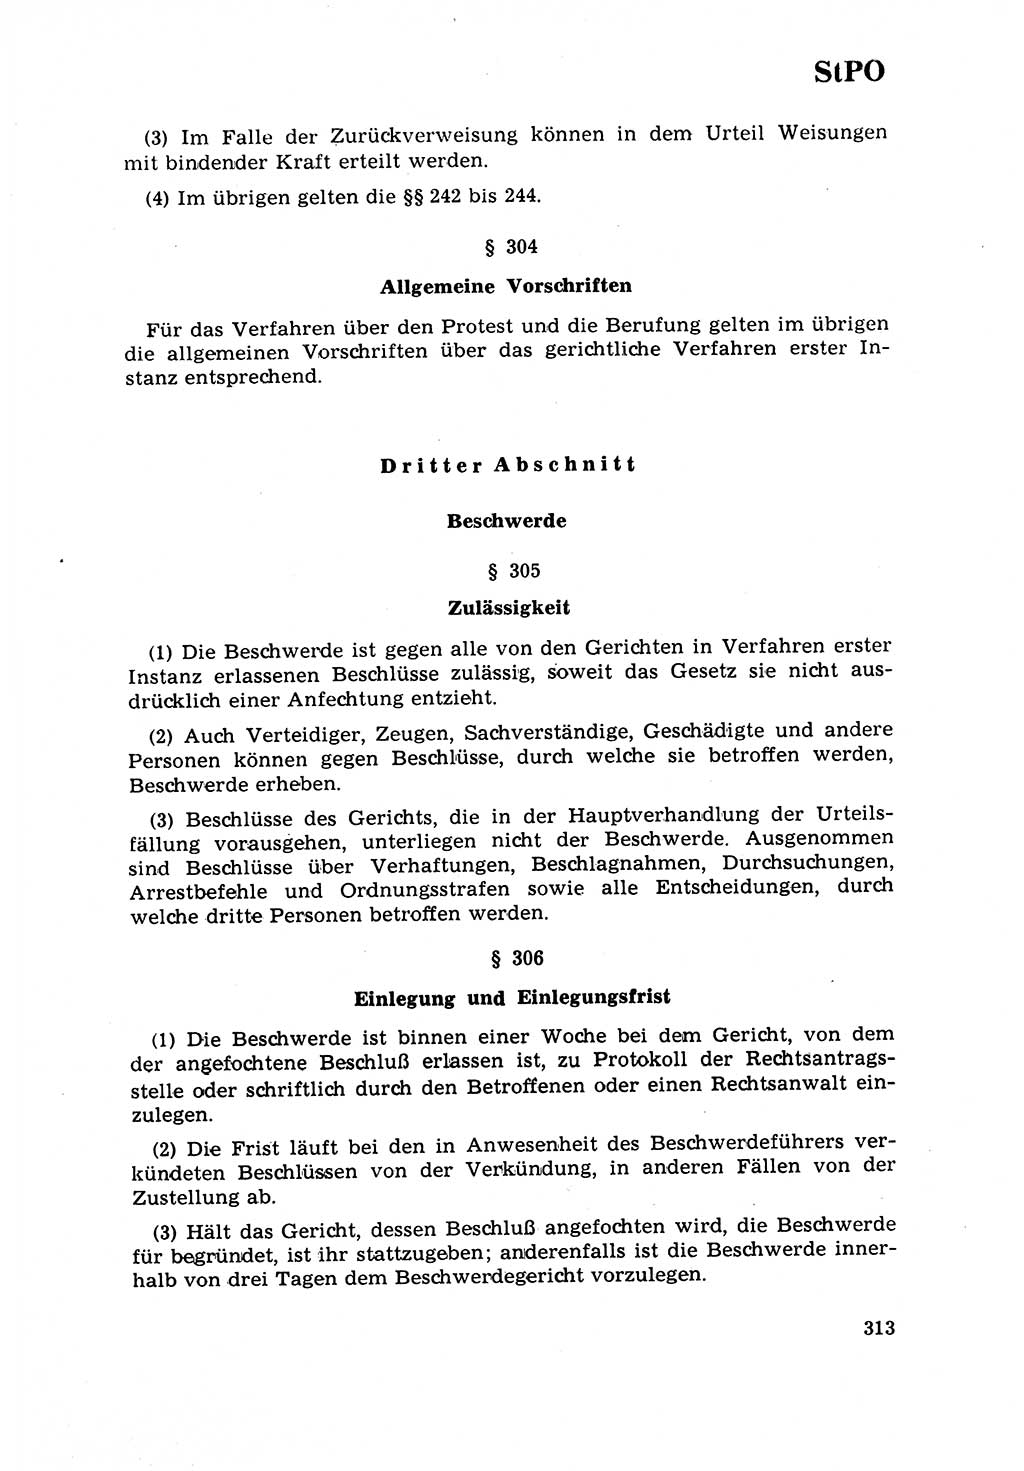 Strafrecht [Deutsche Demokratische Republik (DDR)] 1968, Seite 313 (Strafr. DDR 1968, S. 313)